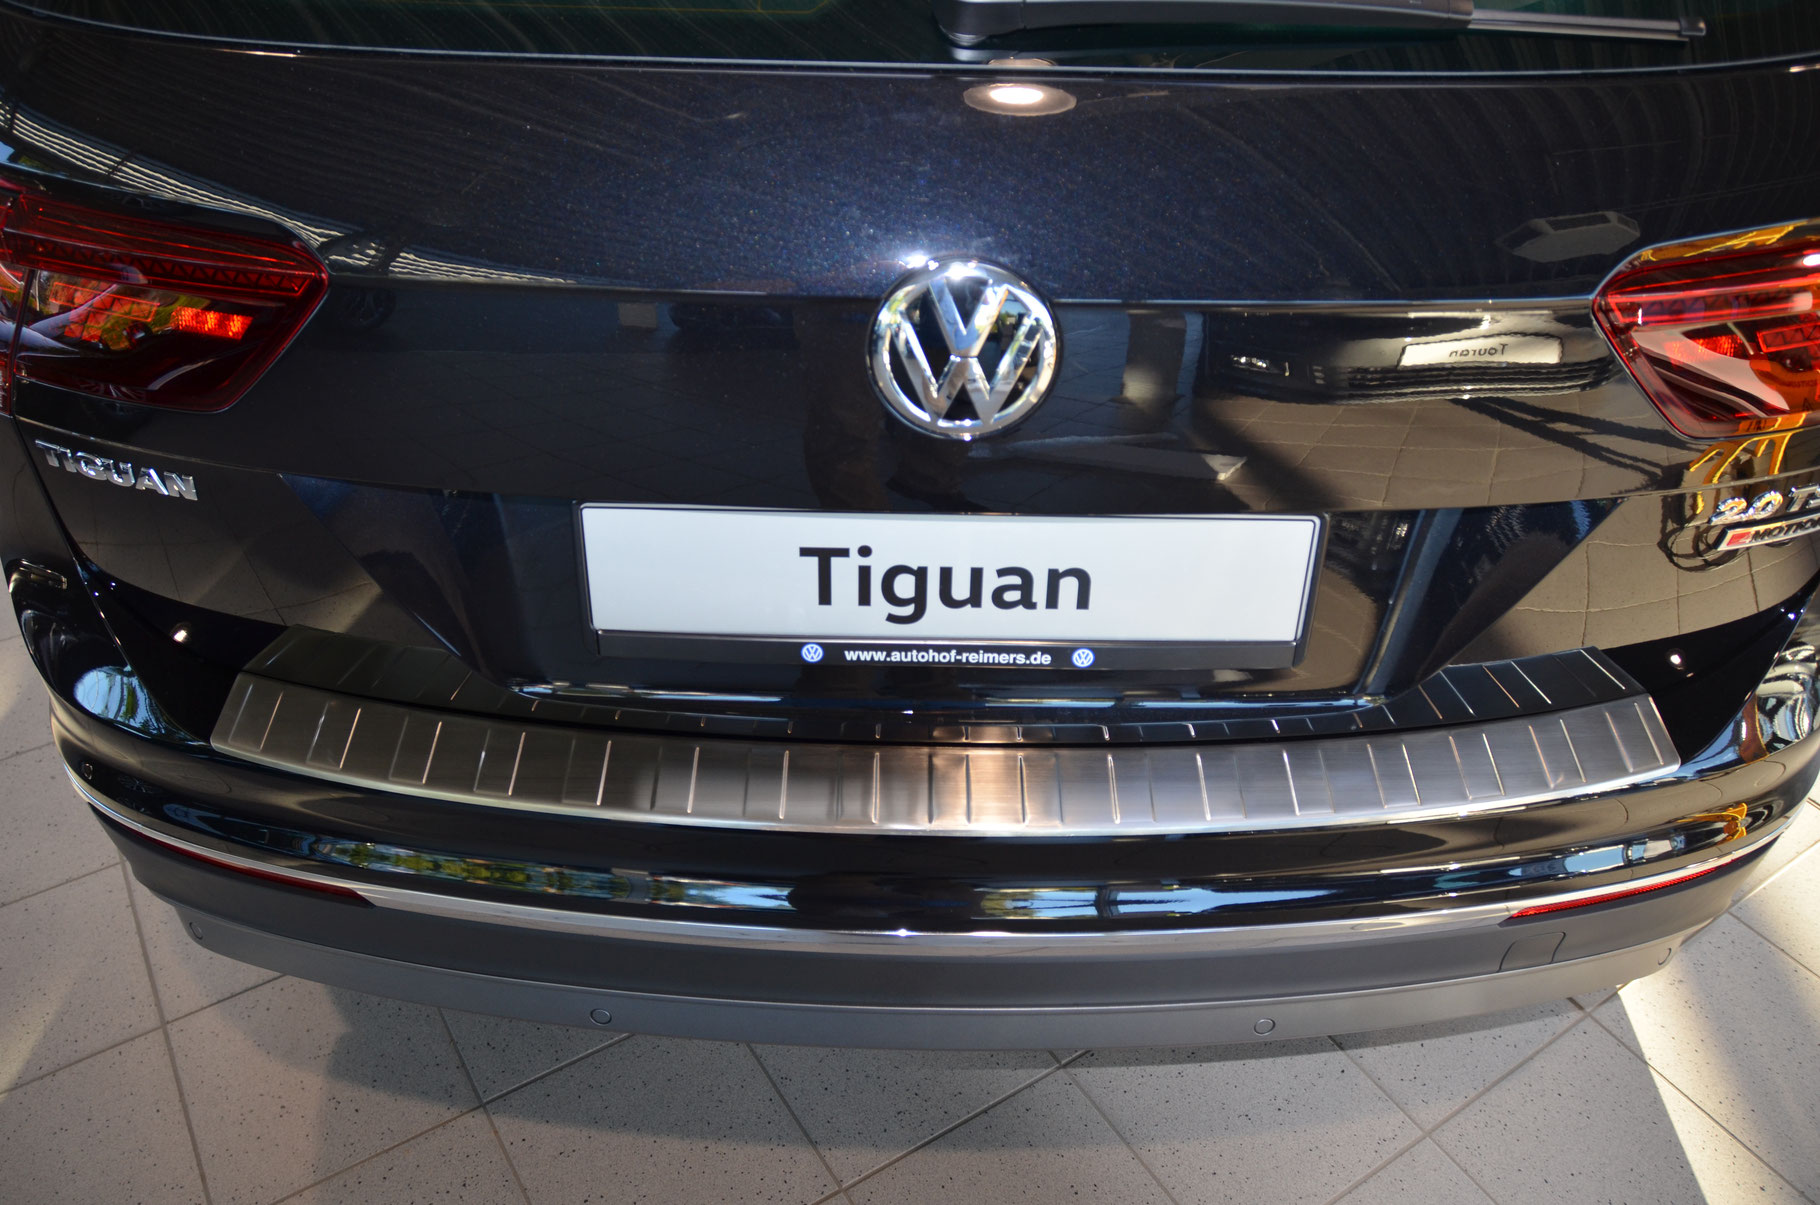 Ladekantenschutz für VW TIGUAN - Schutz für die Ladekante Ihres